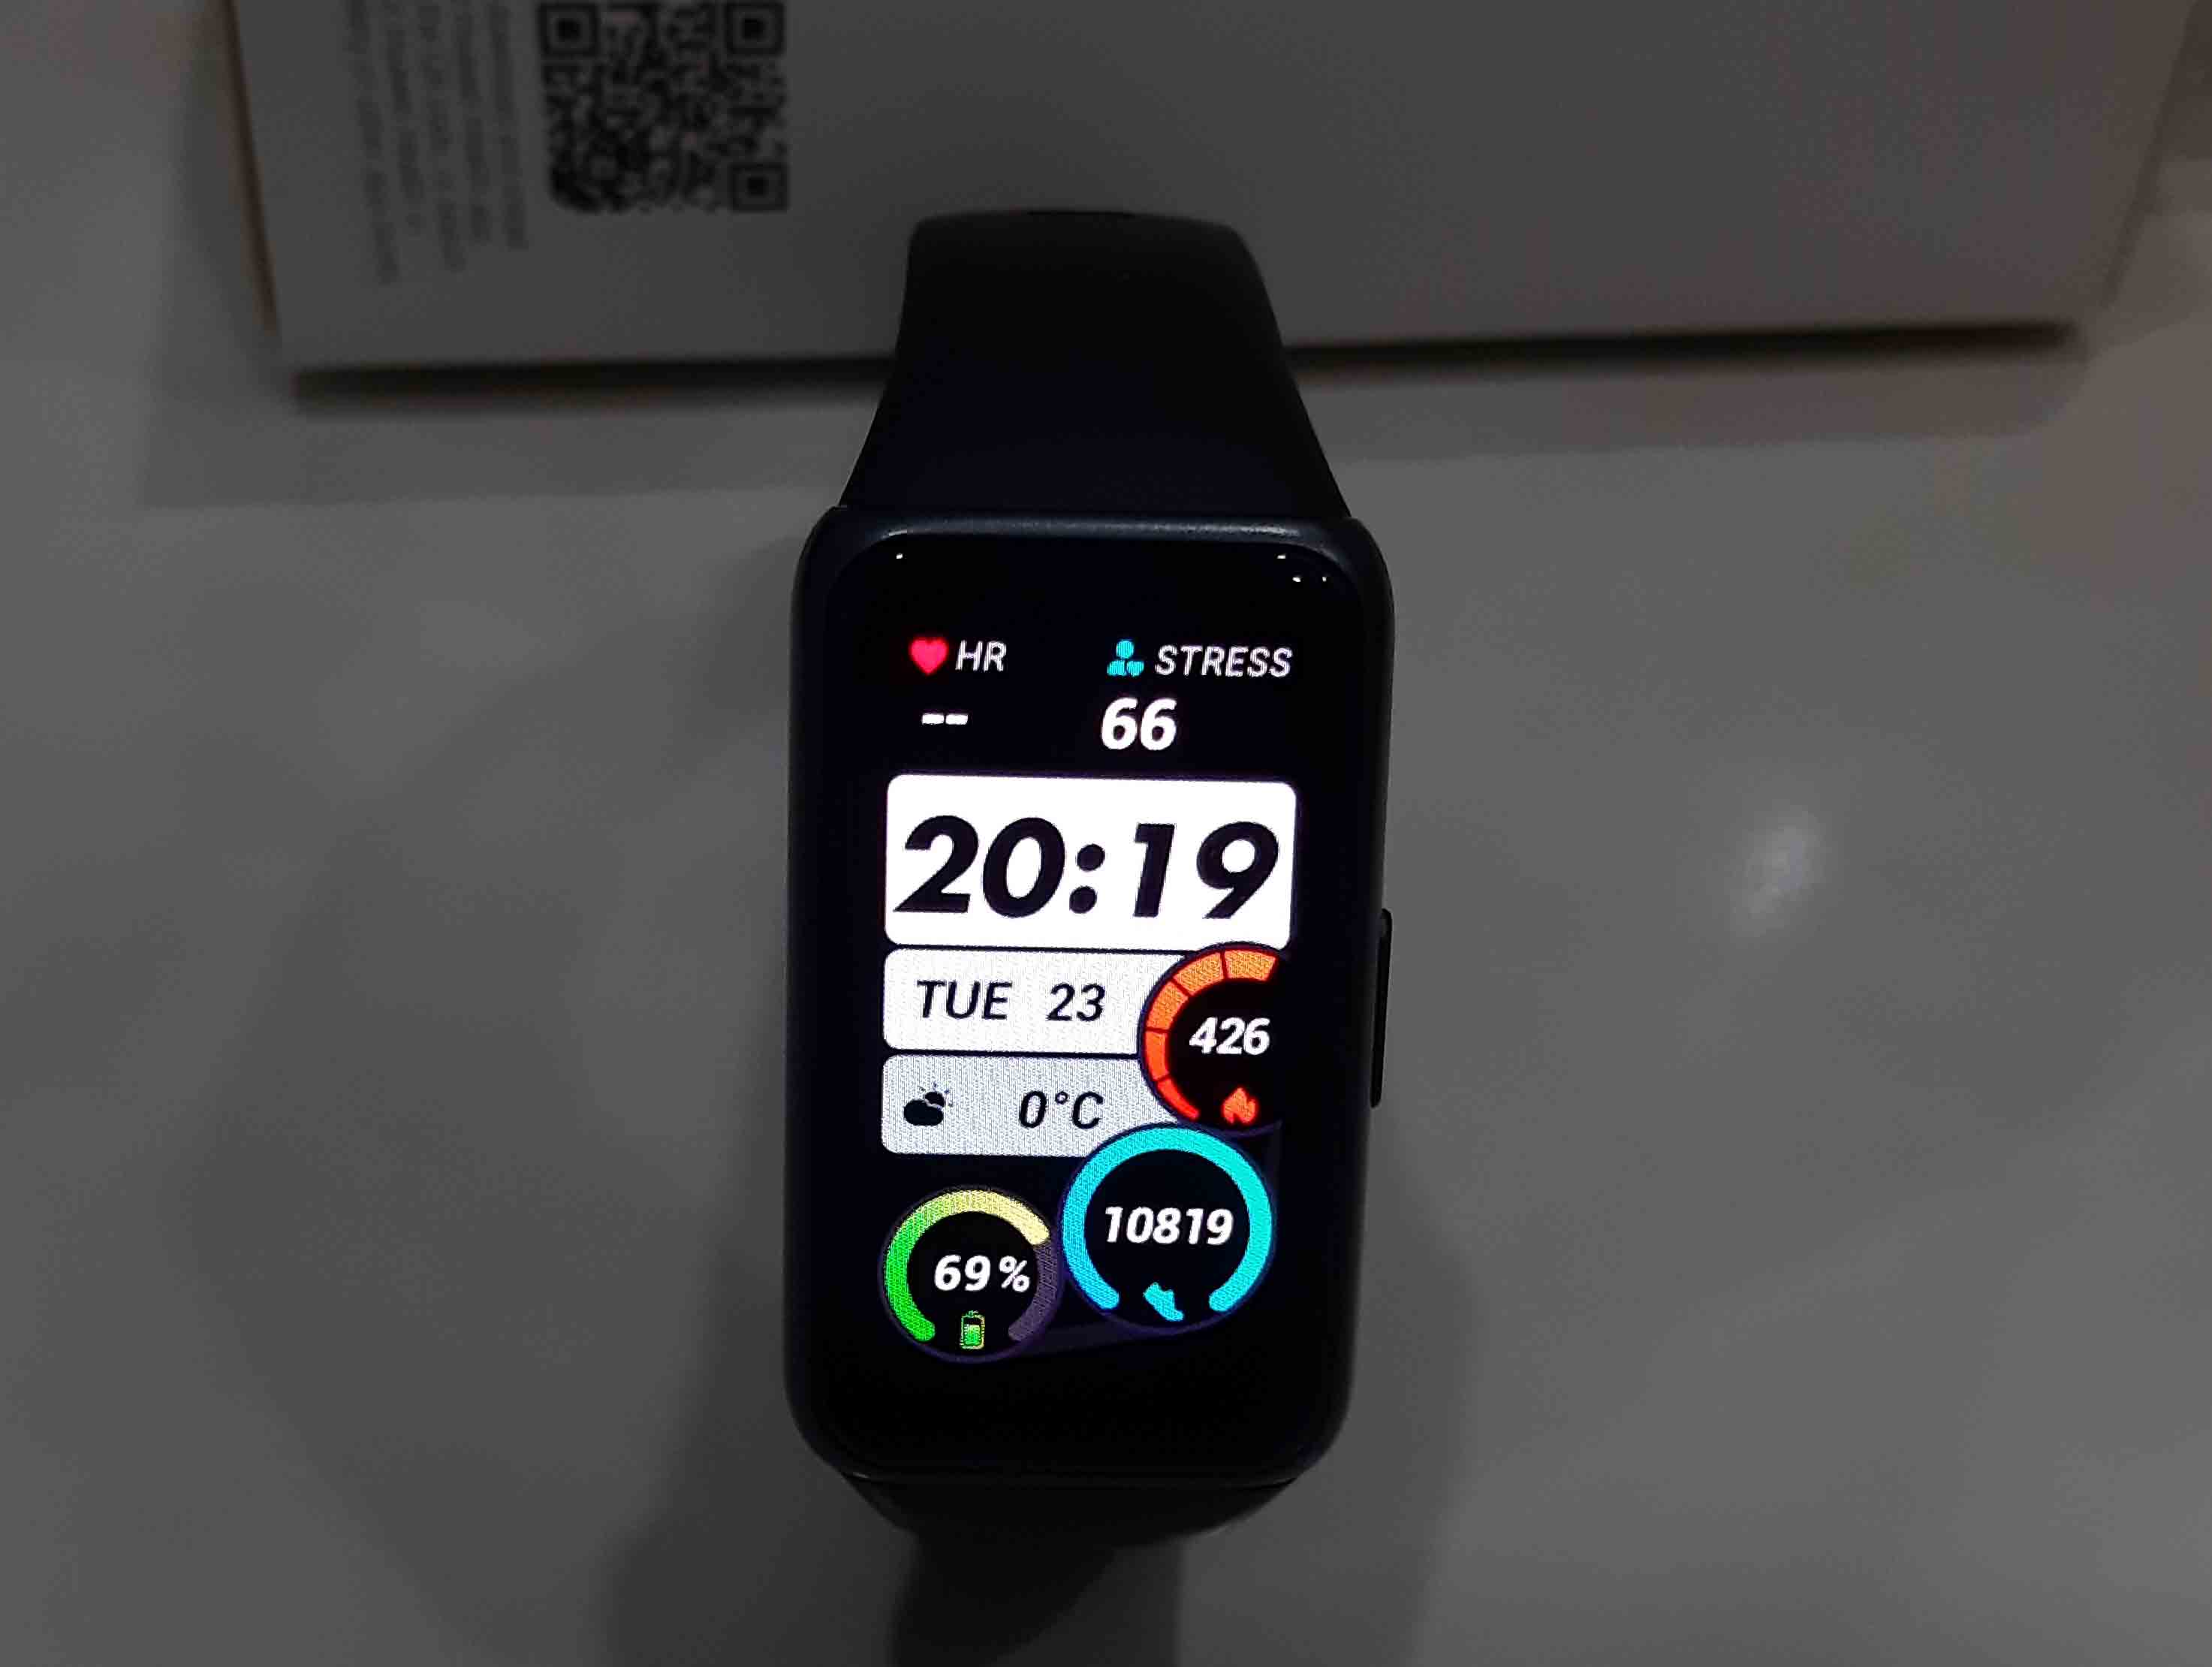 Циферблаты huawei band 6 на русском скачать приложение на телефон и как купить циферблаты для huawei watch gt2 в приложении здоровье?